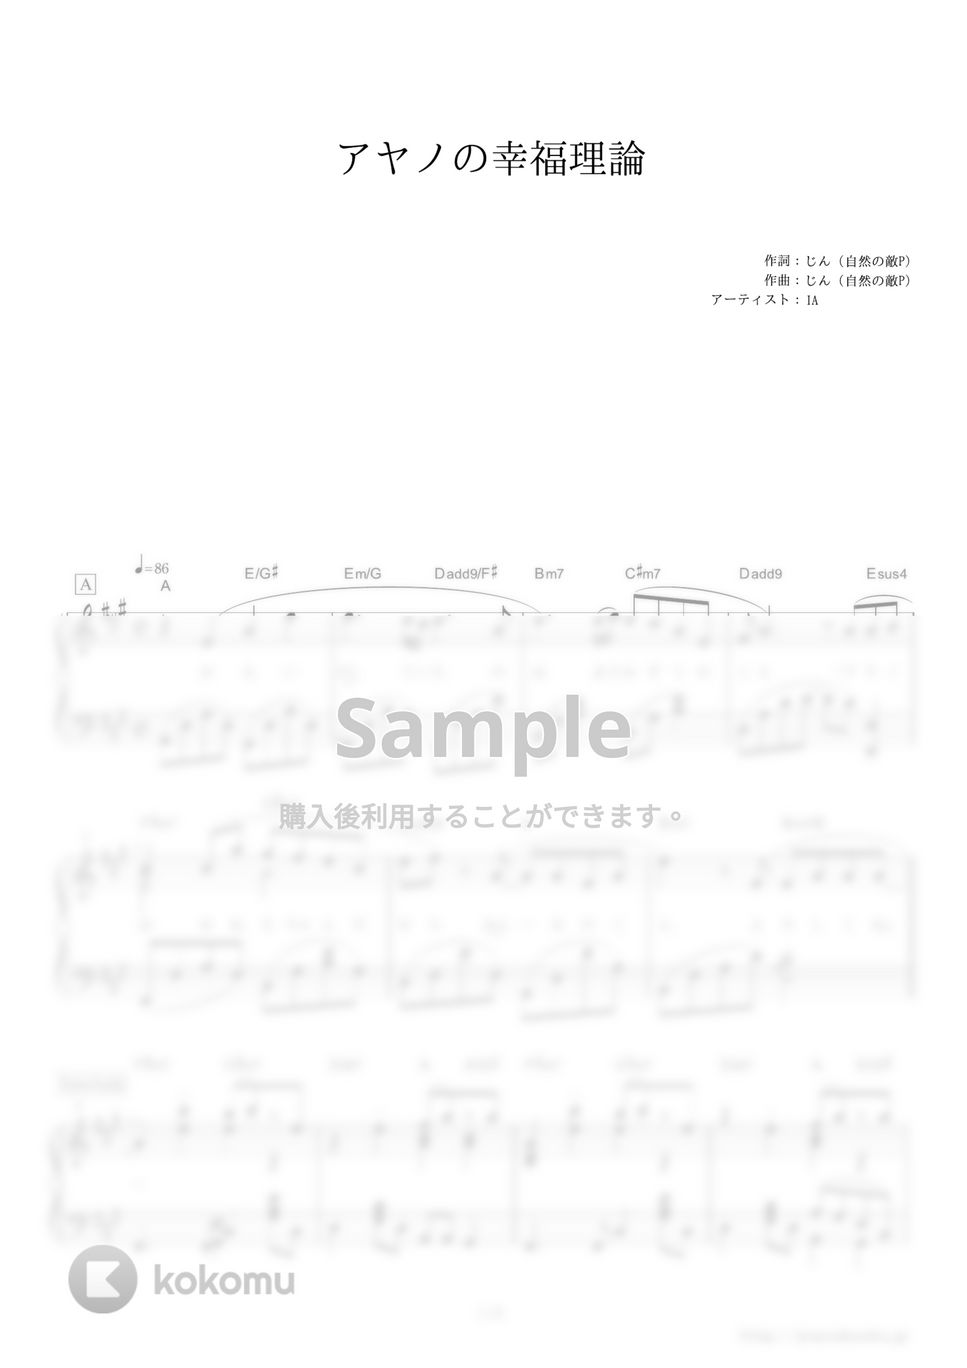 じん（自然の敵P） - アヤノの幸福理論 by ピアノの本棚